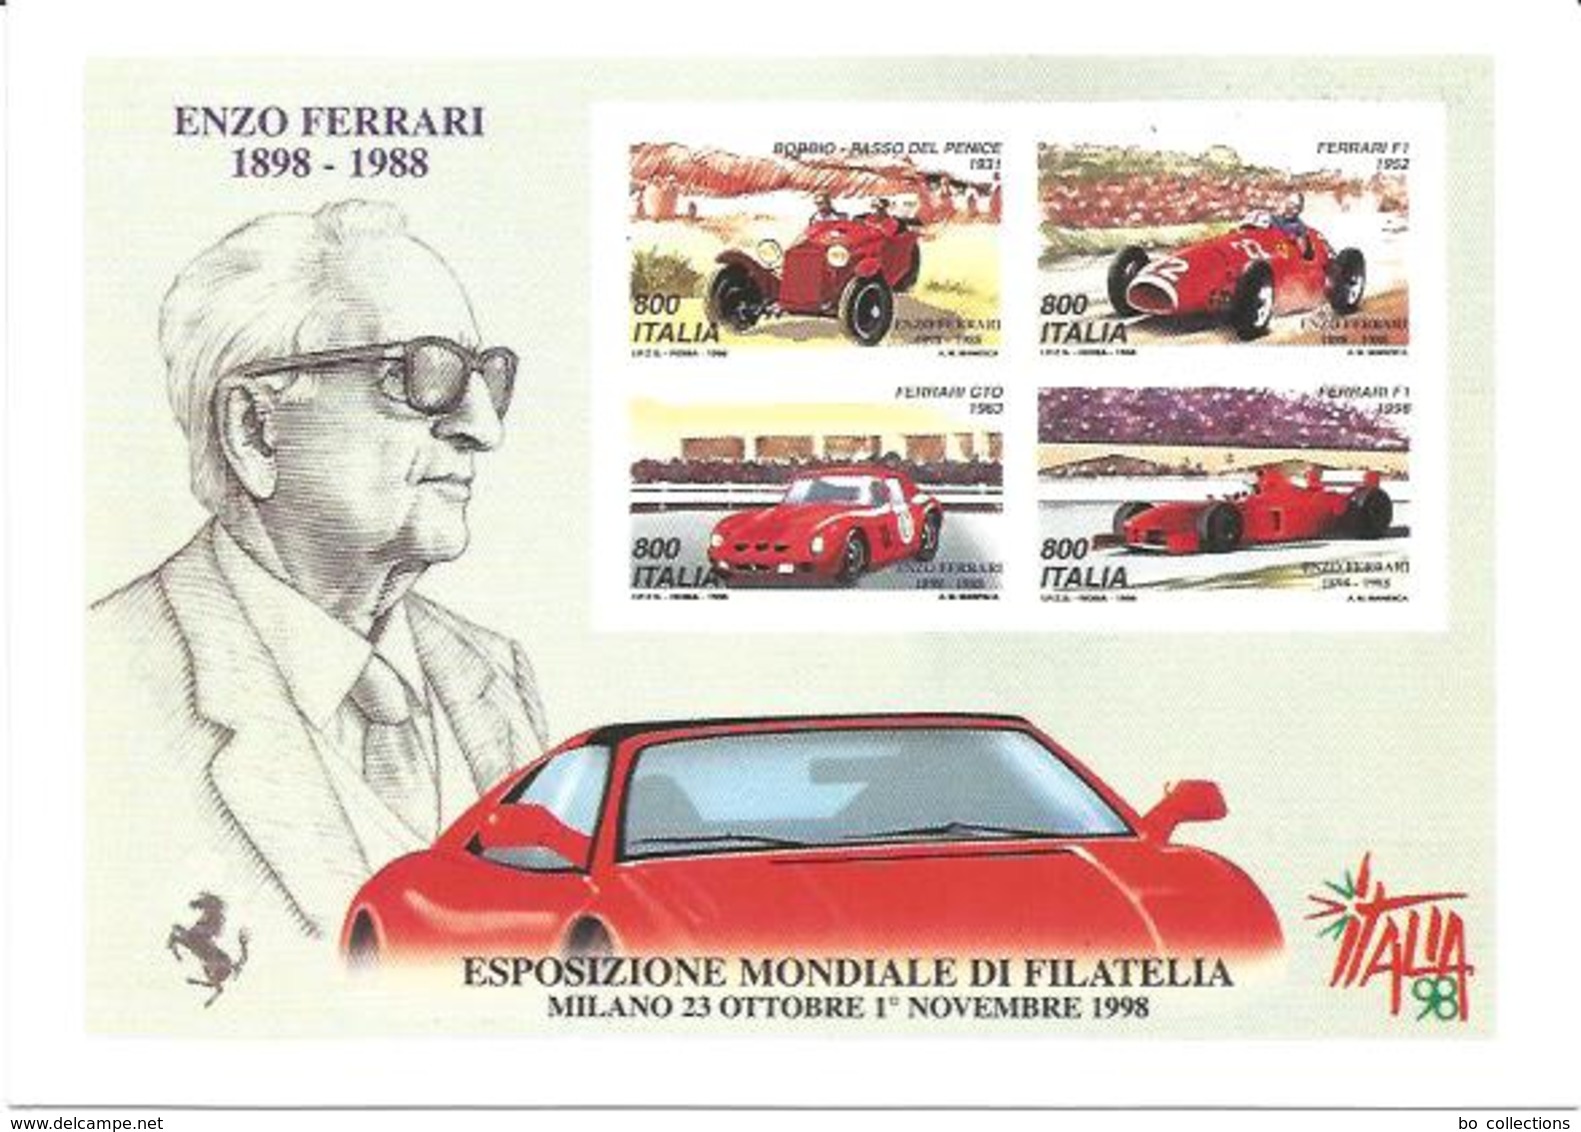 Ferrari Enzo 1898 - 1988, Milano Esposizione Mondiale Di Filatelia 26.10.1998 Giornata Della Ferrari, Poste Italiane. - Sportsmen